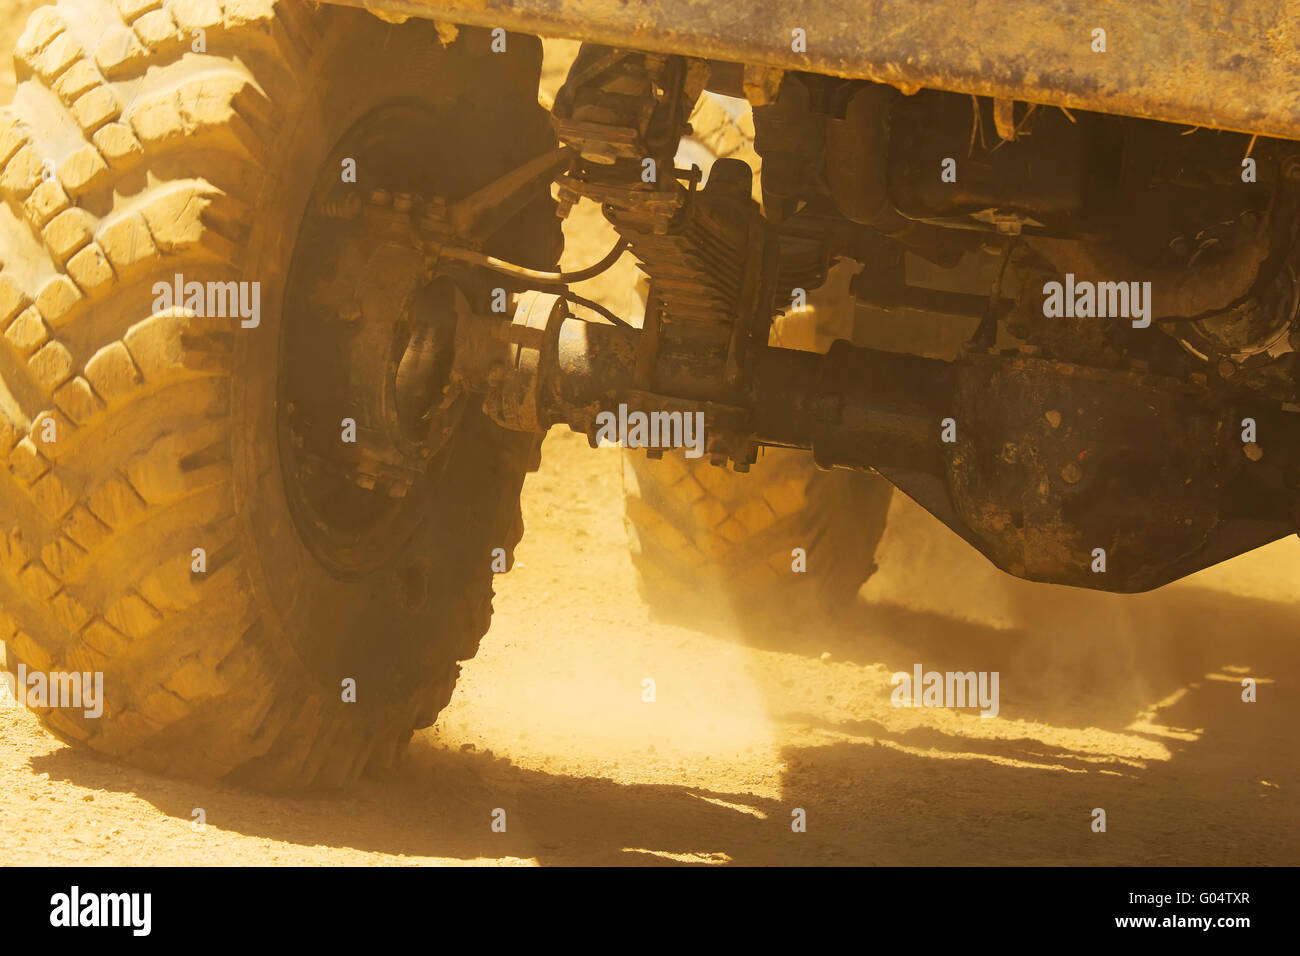 Vue détaillée des roues, pneus de camion qui va de l'arbre et dans la poussière du désert. Banque D'Images